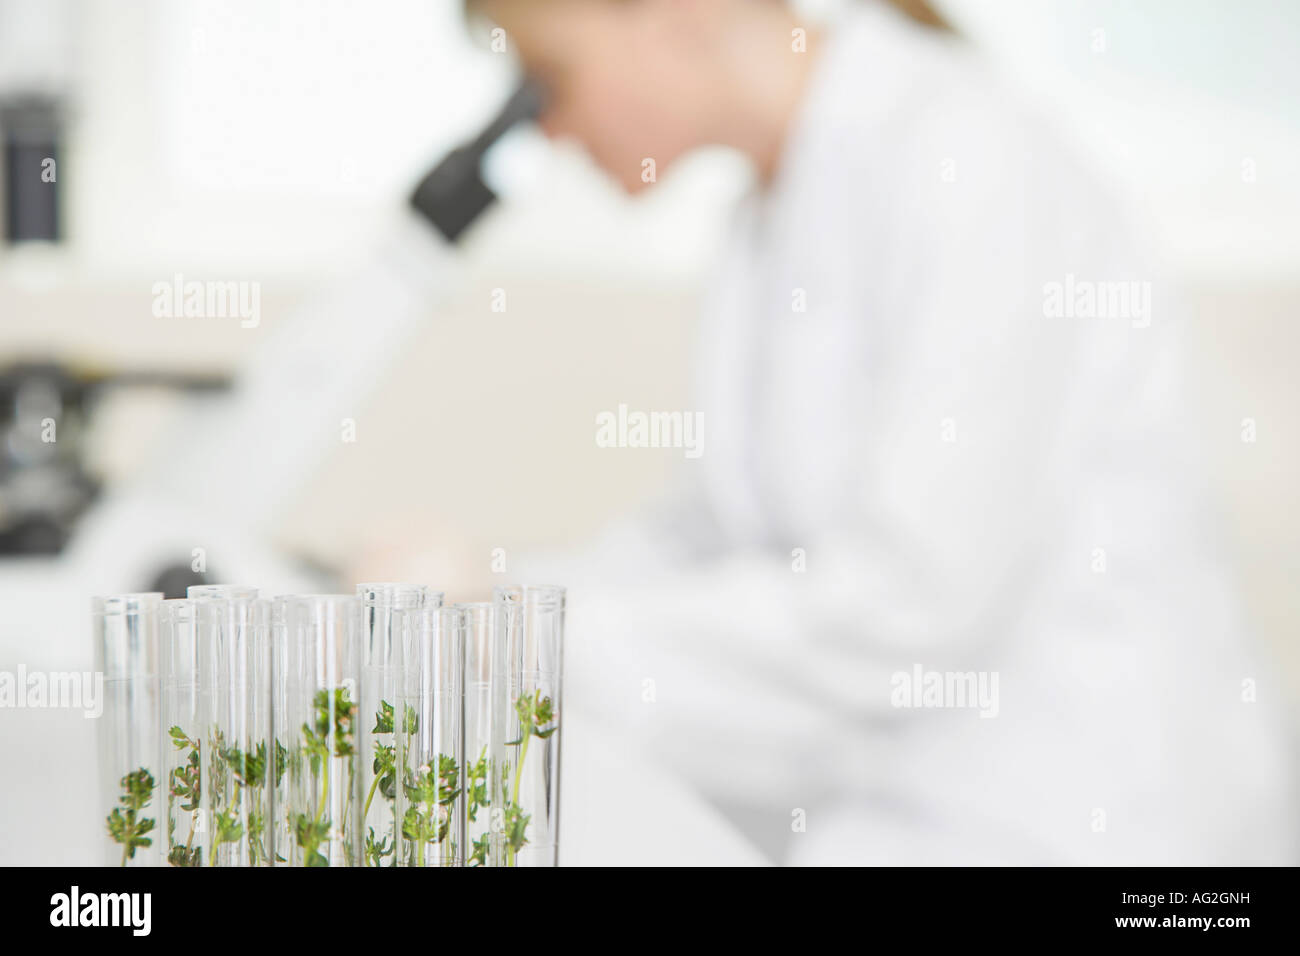 Wissenschaftler mit Mikroskop im Labor, Fokus auf Pflanzen im Reagenzglas im Vordergrund Stockfoto